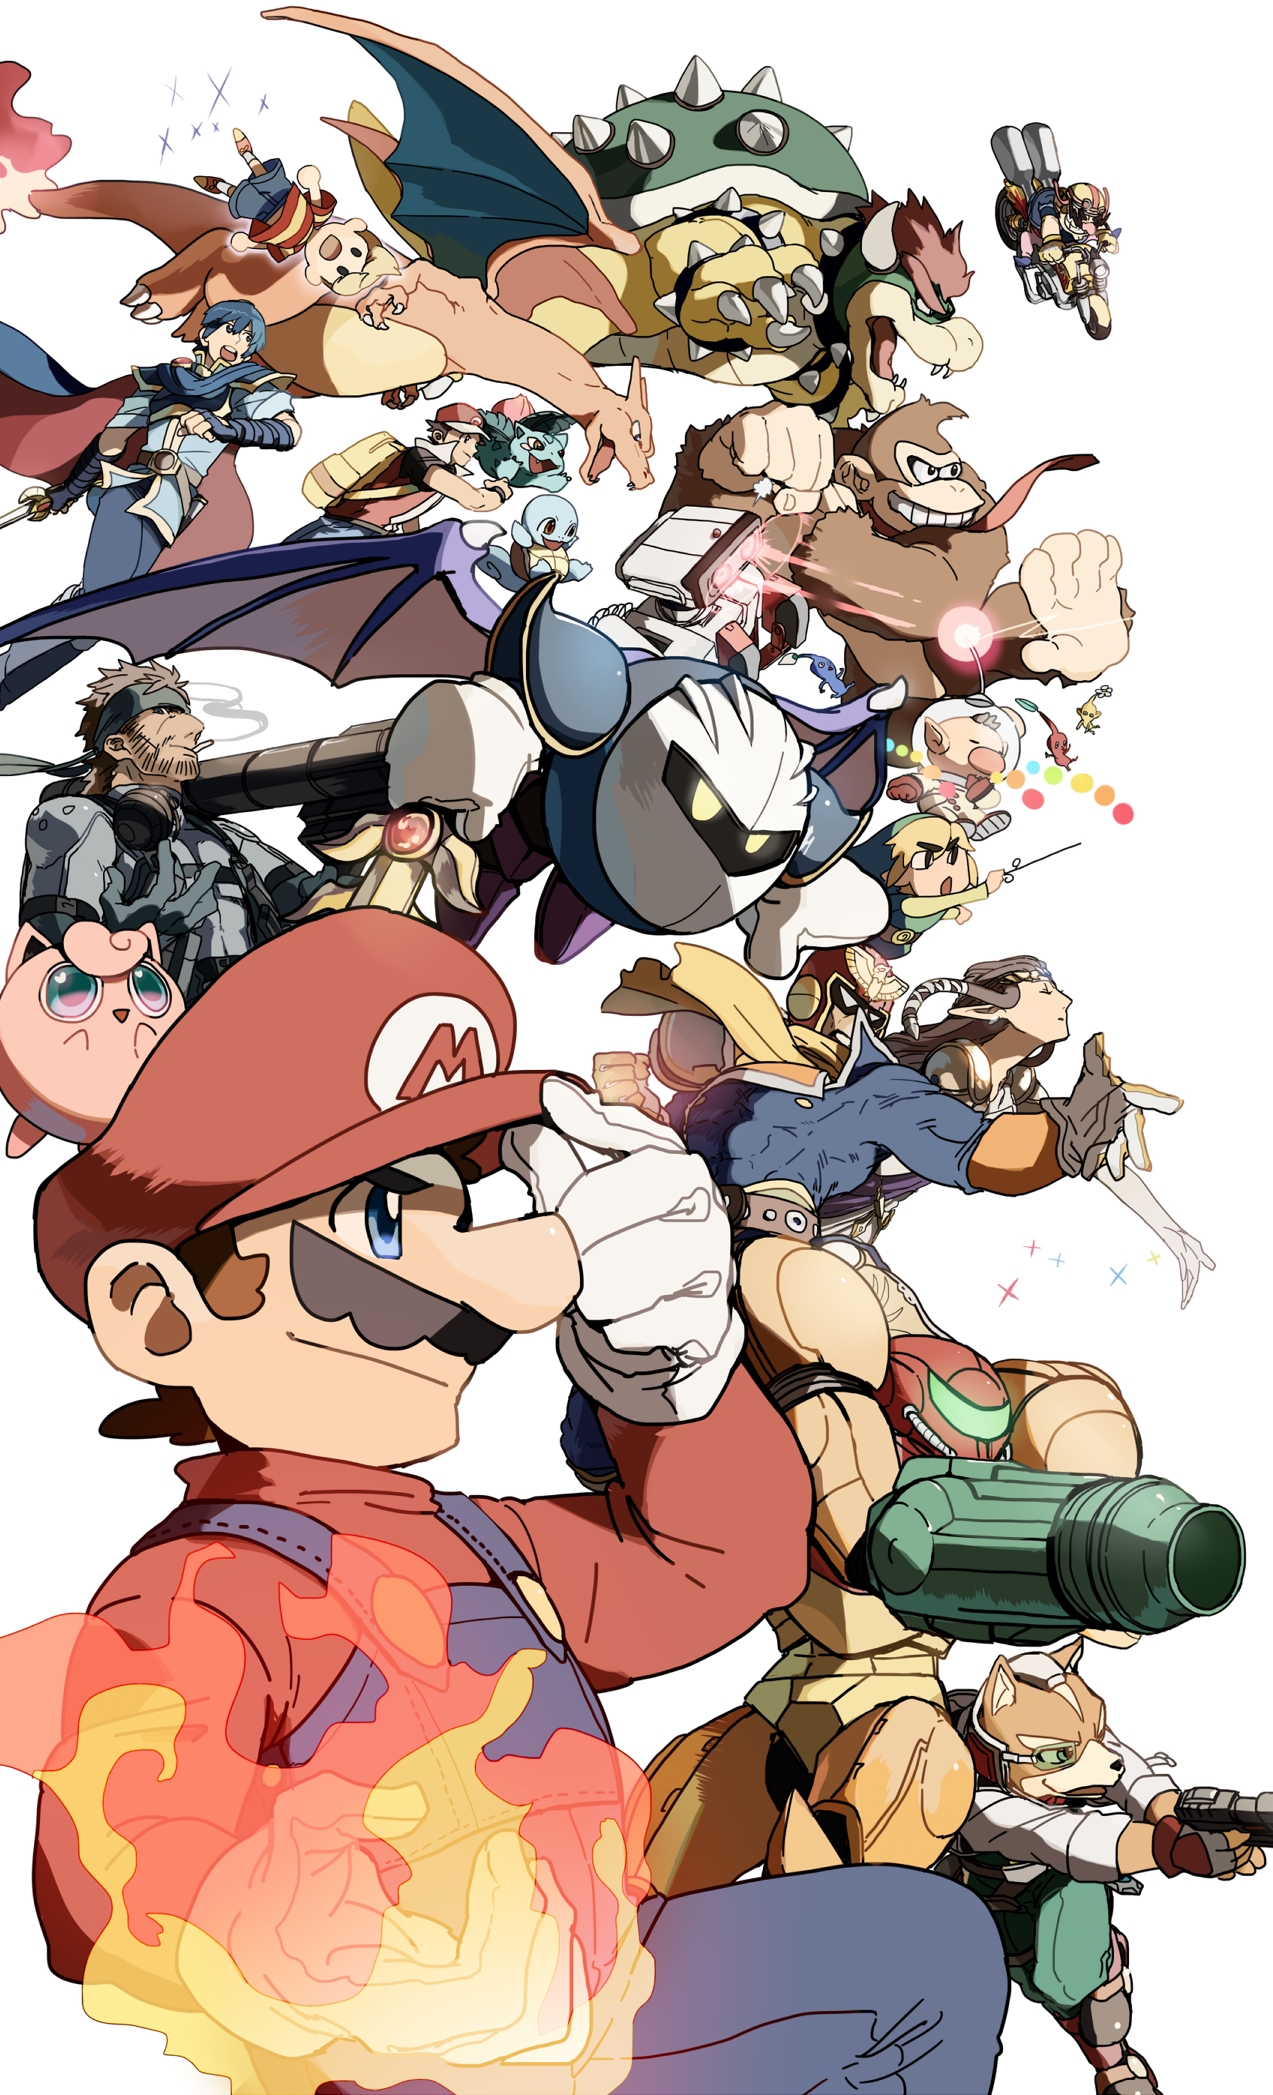 Super Smash Bros Iphone Wallpaper Hd - HD Wallpaper 